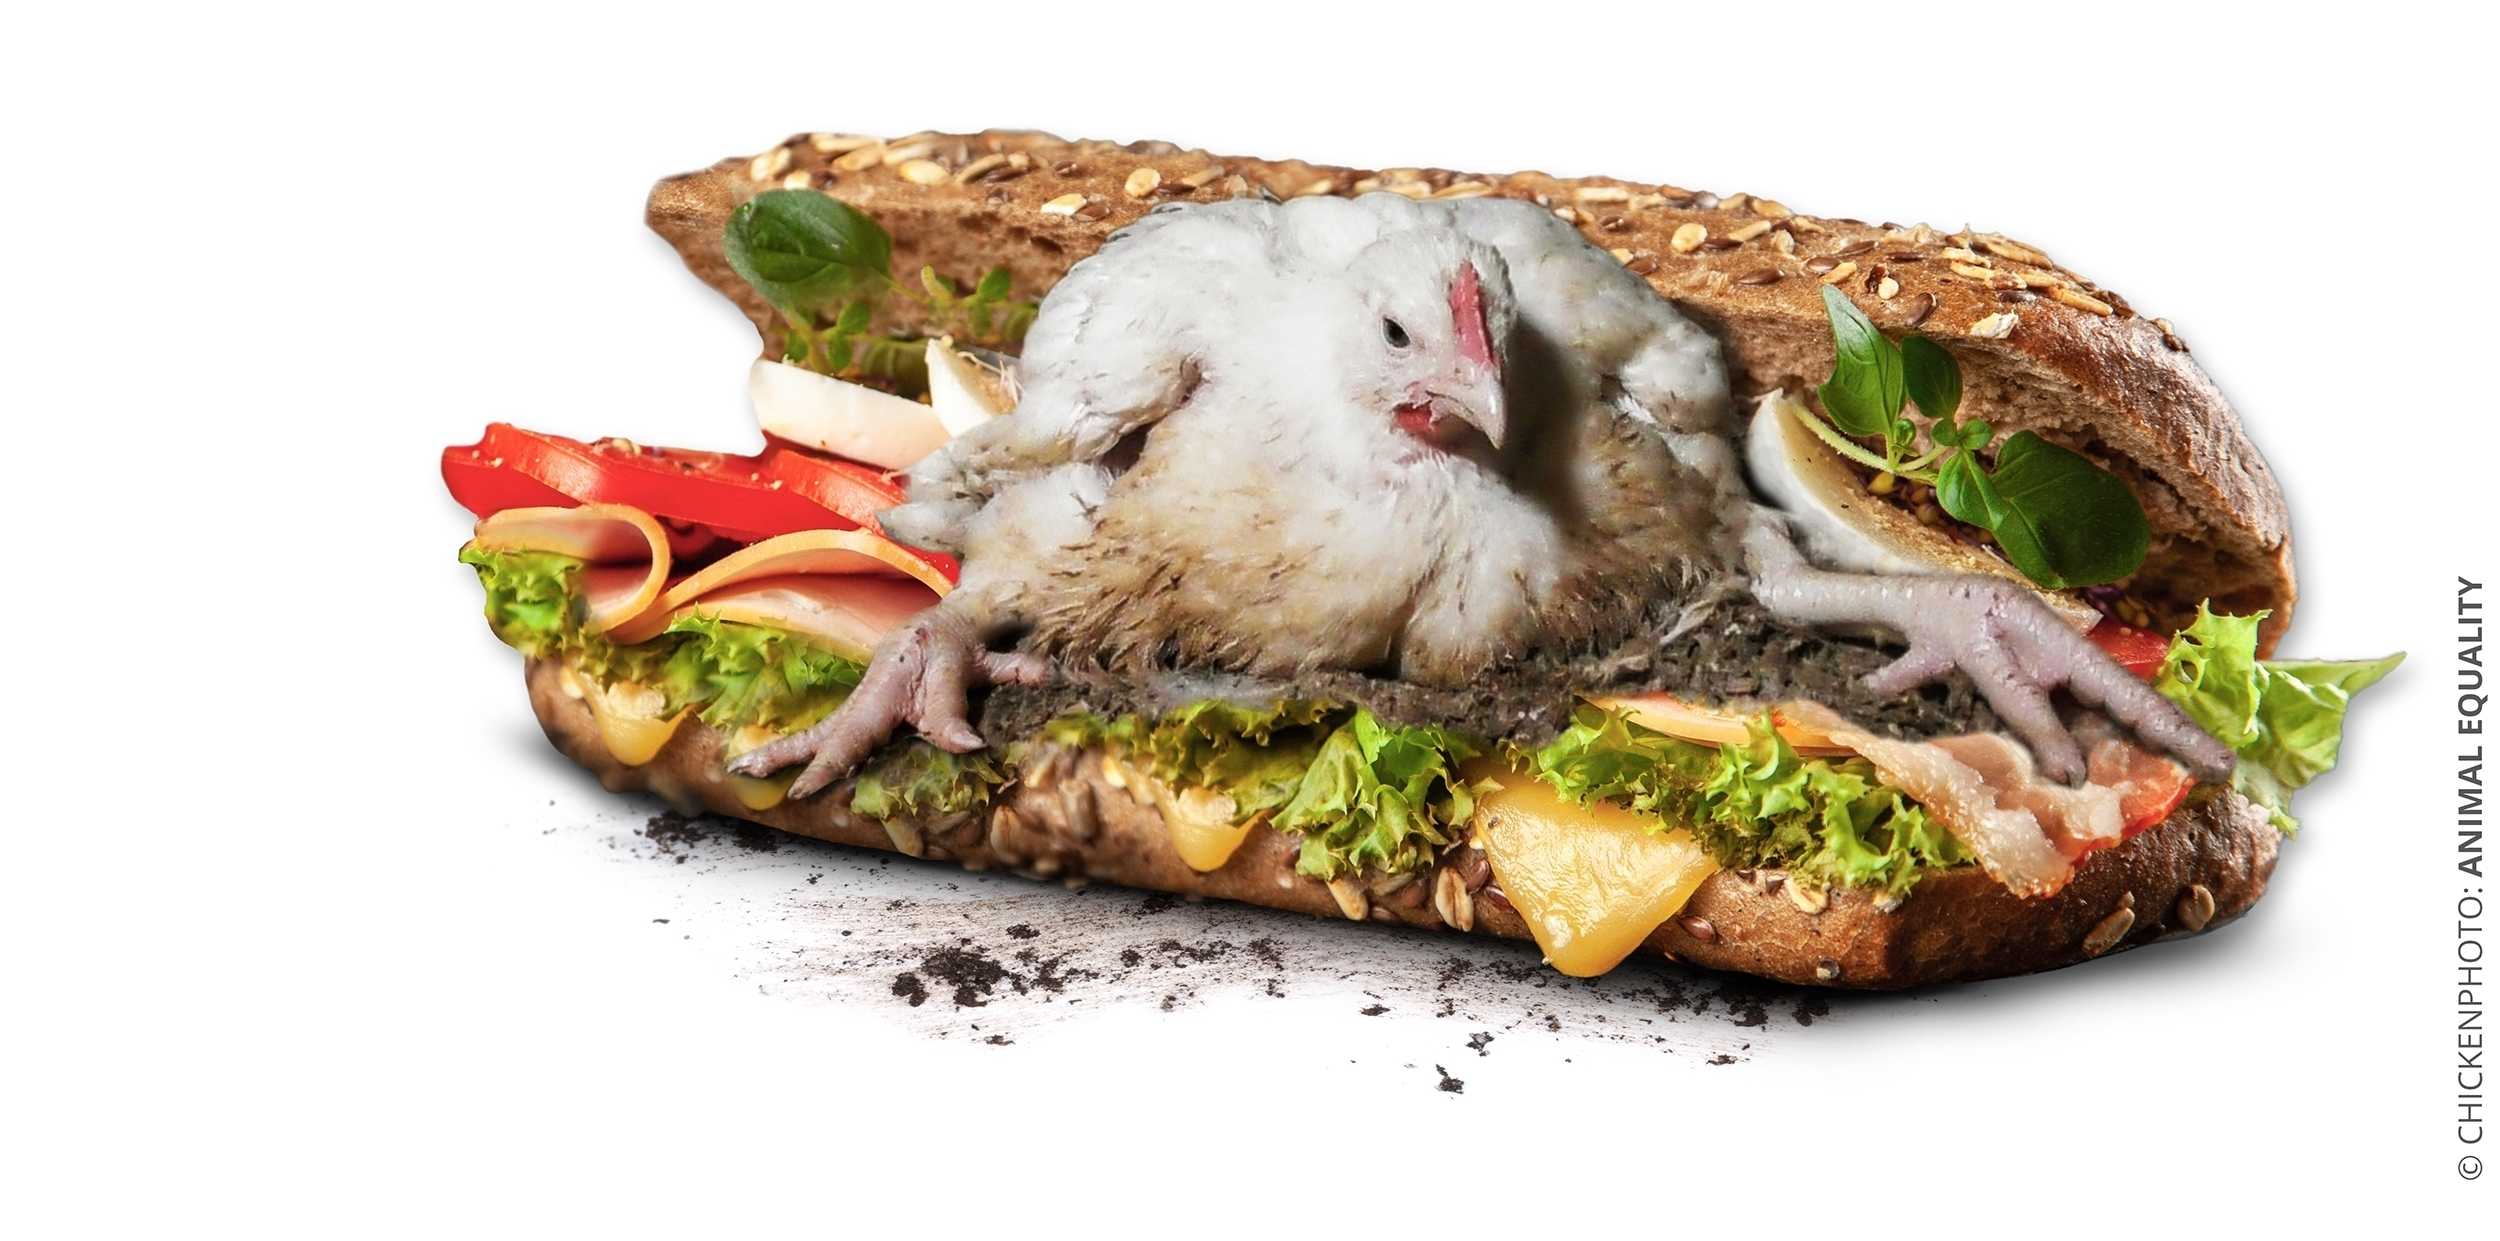 Europeisk kampanj mot världens största restaurangkedja Subway – uppmanas ta mer ansvar för kycklingarna